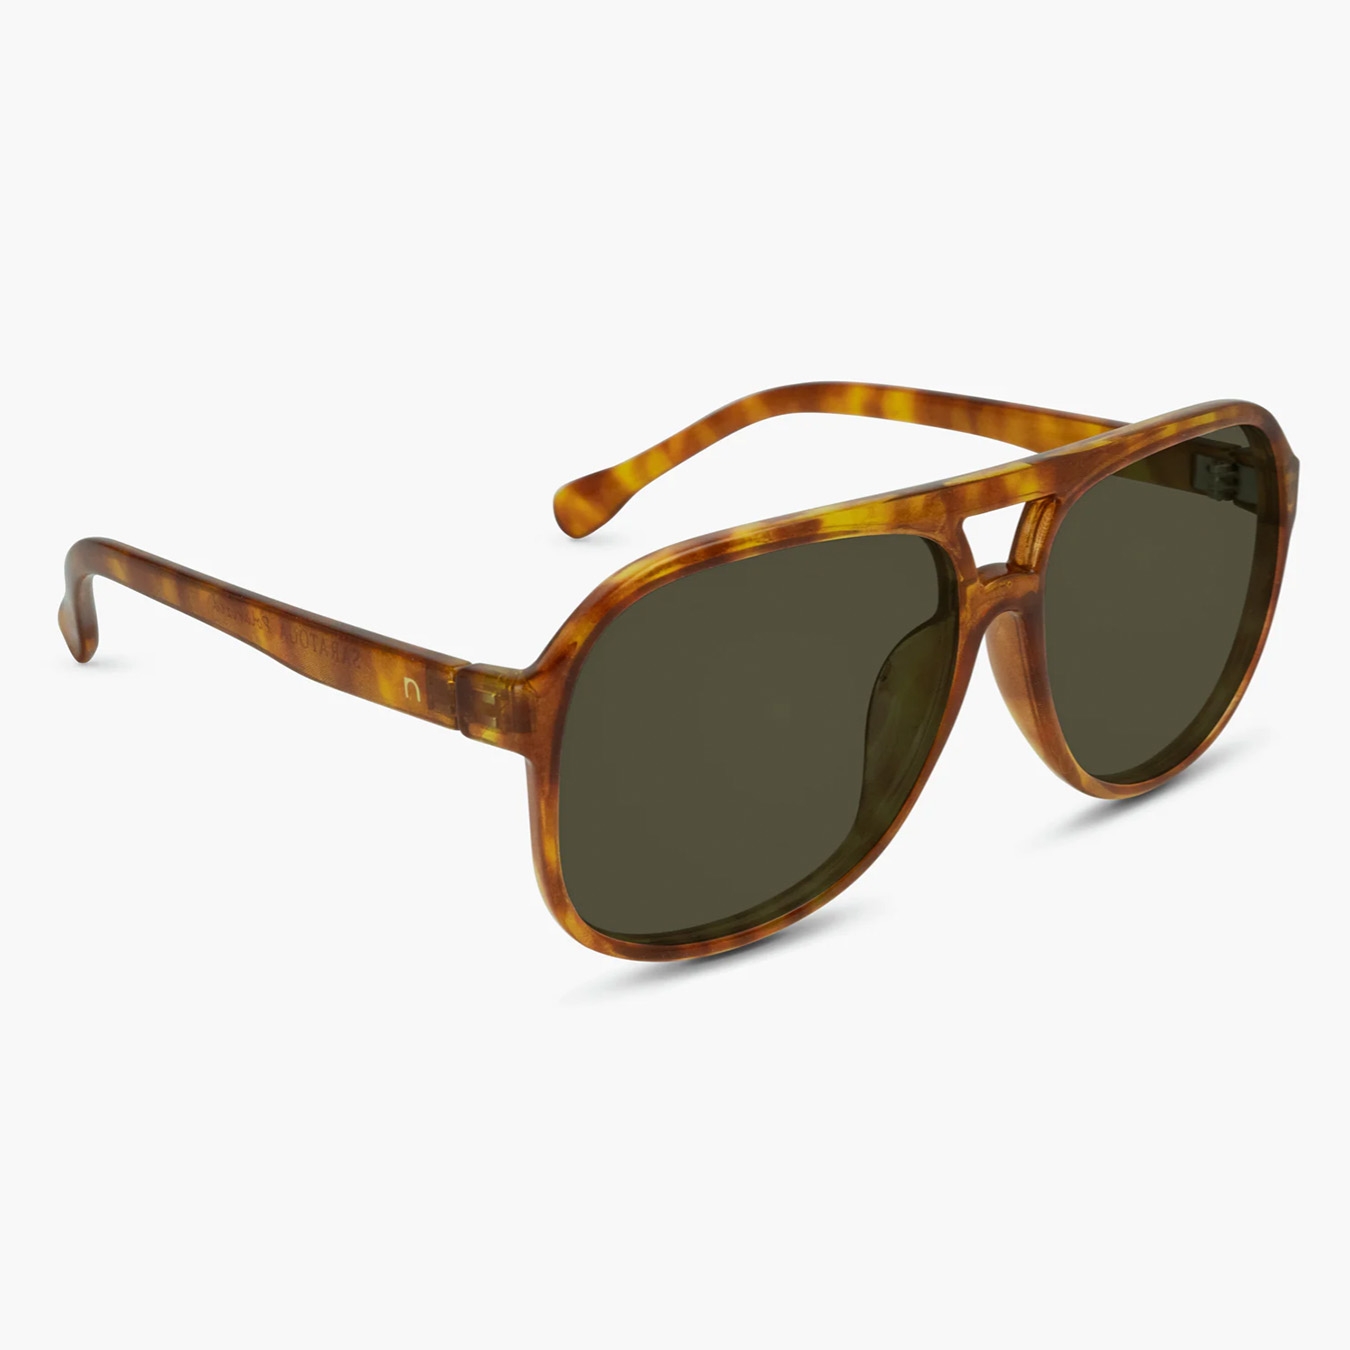 Saratoga Polarized Sunglasses